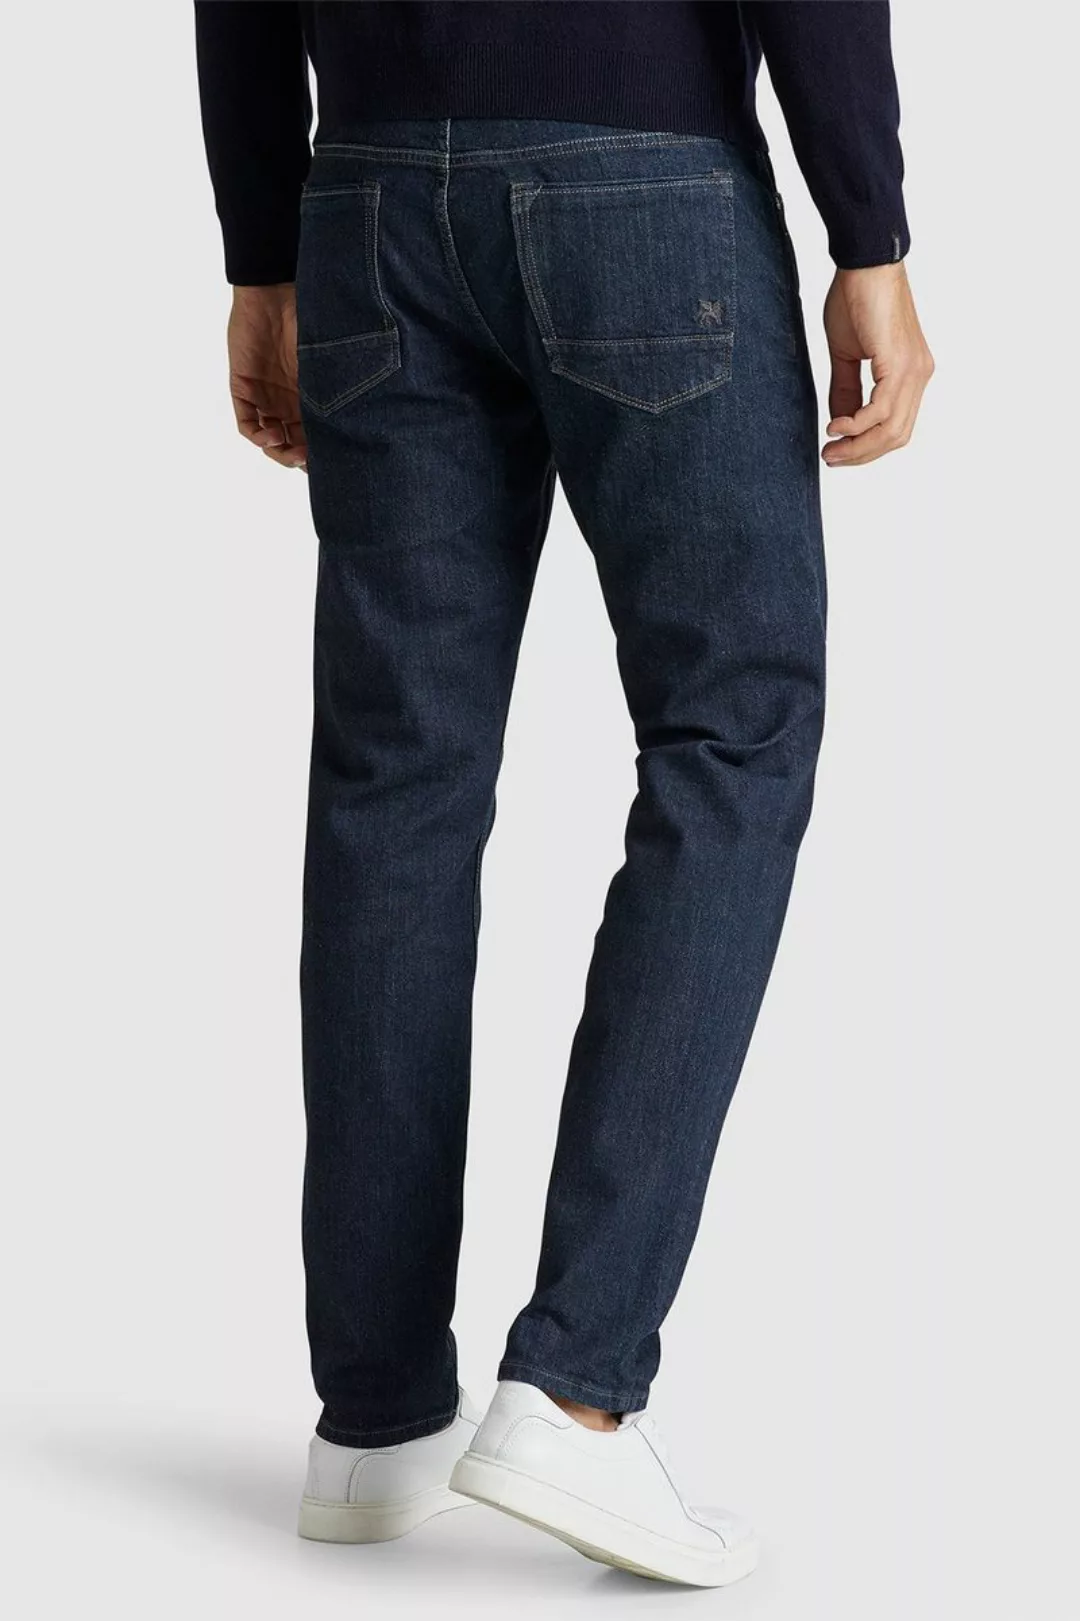 Vanguard Jeans V7 Rider Dunkelblau - Größe W 30 - L 32 günstig online kaufen